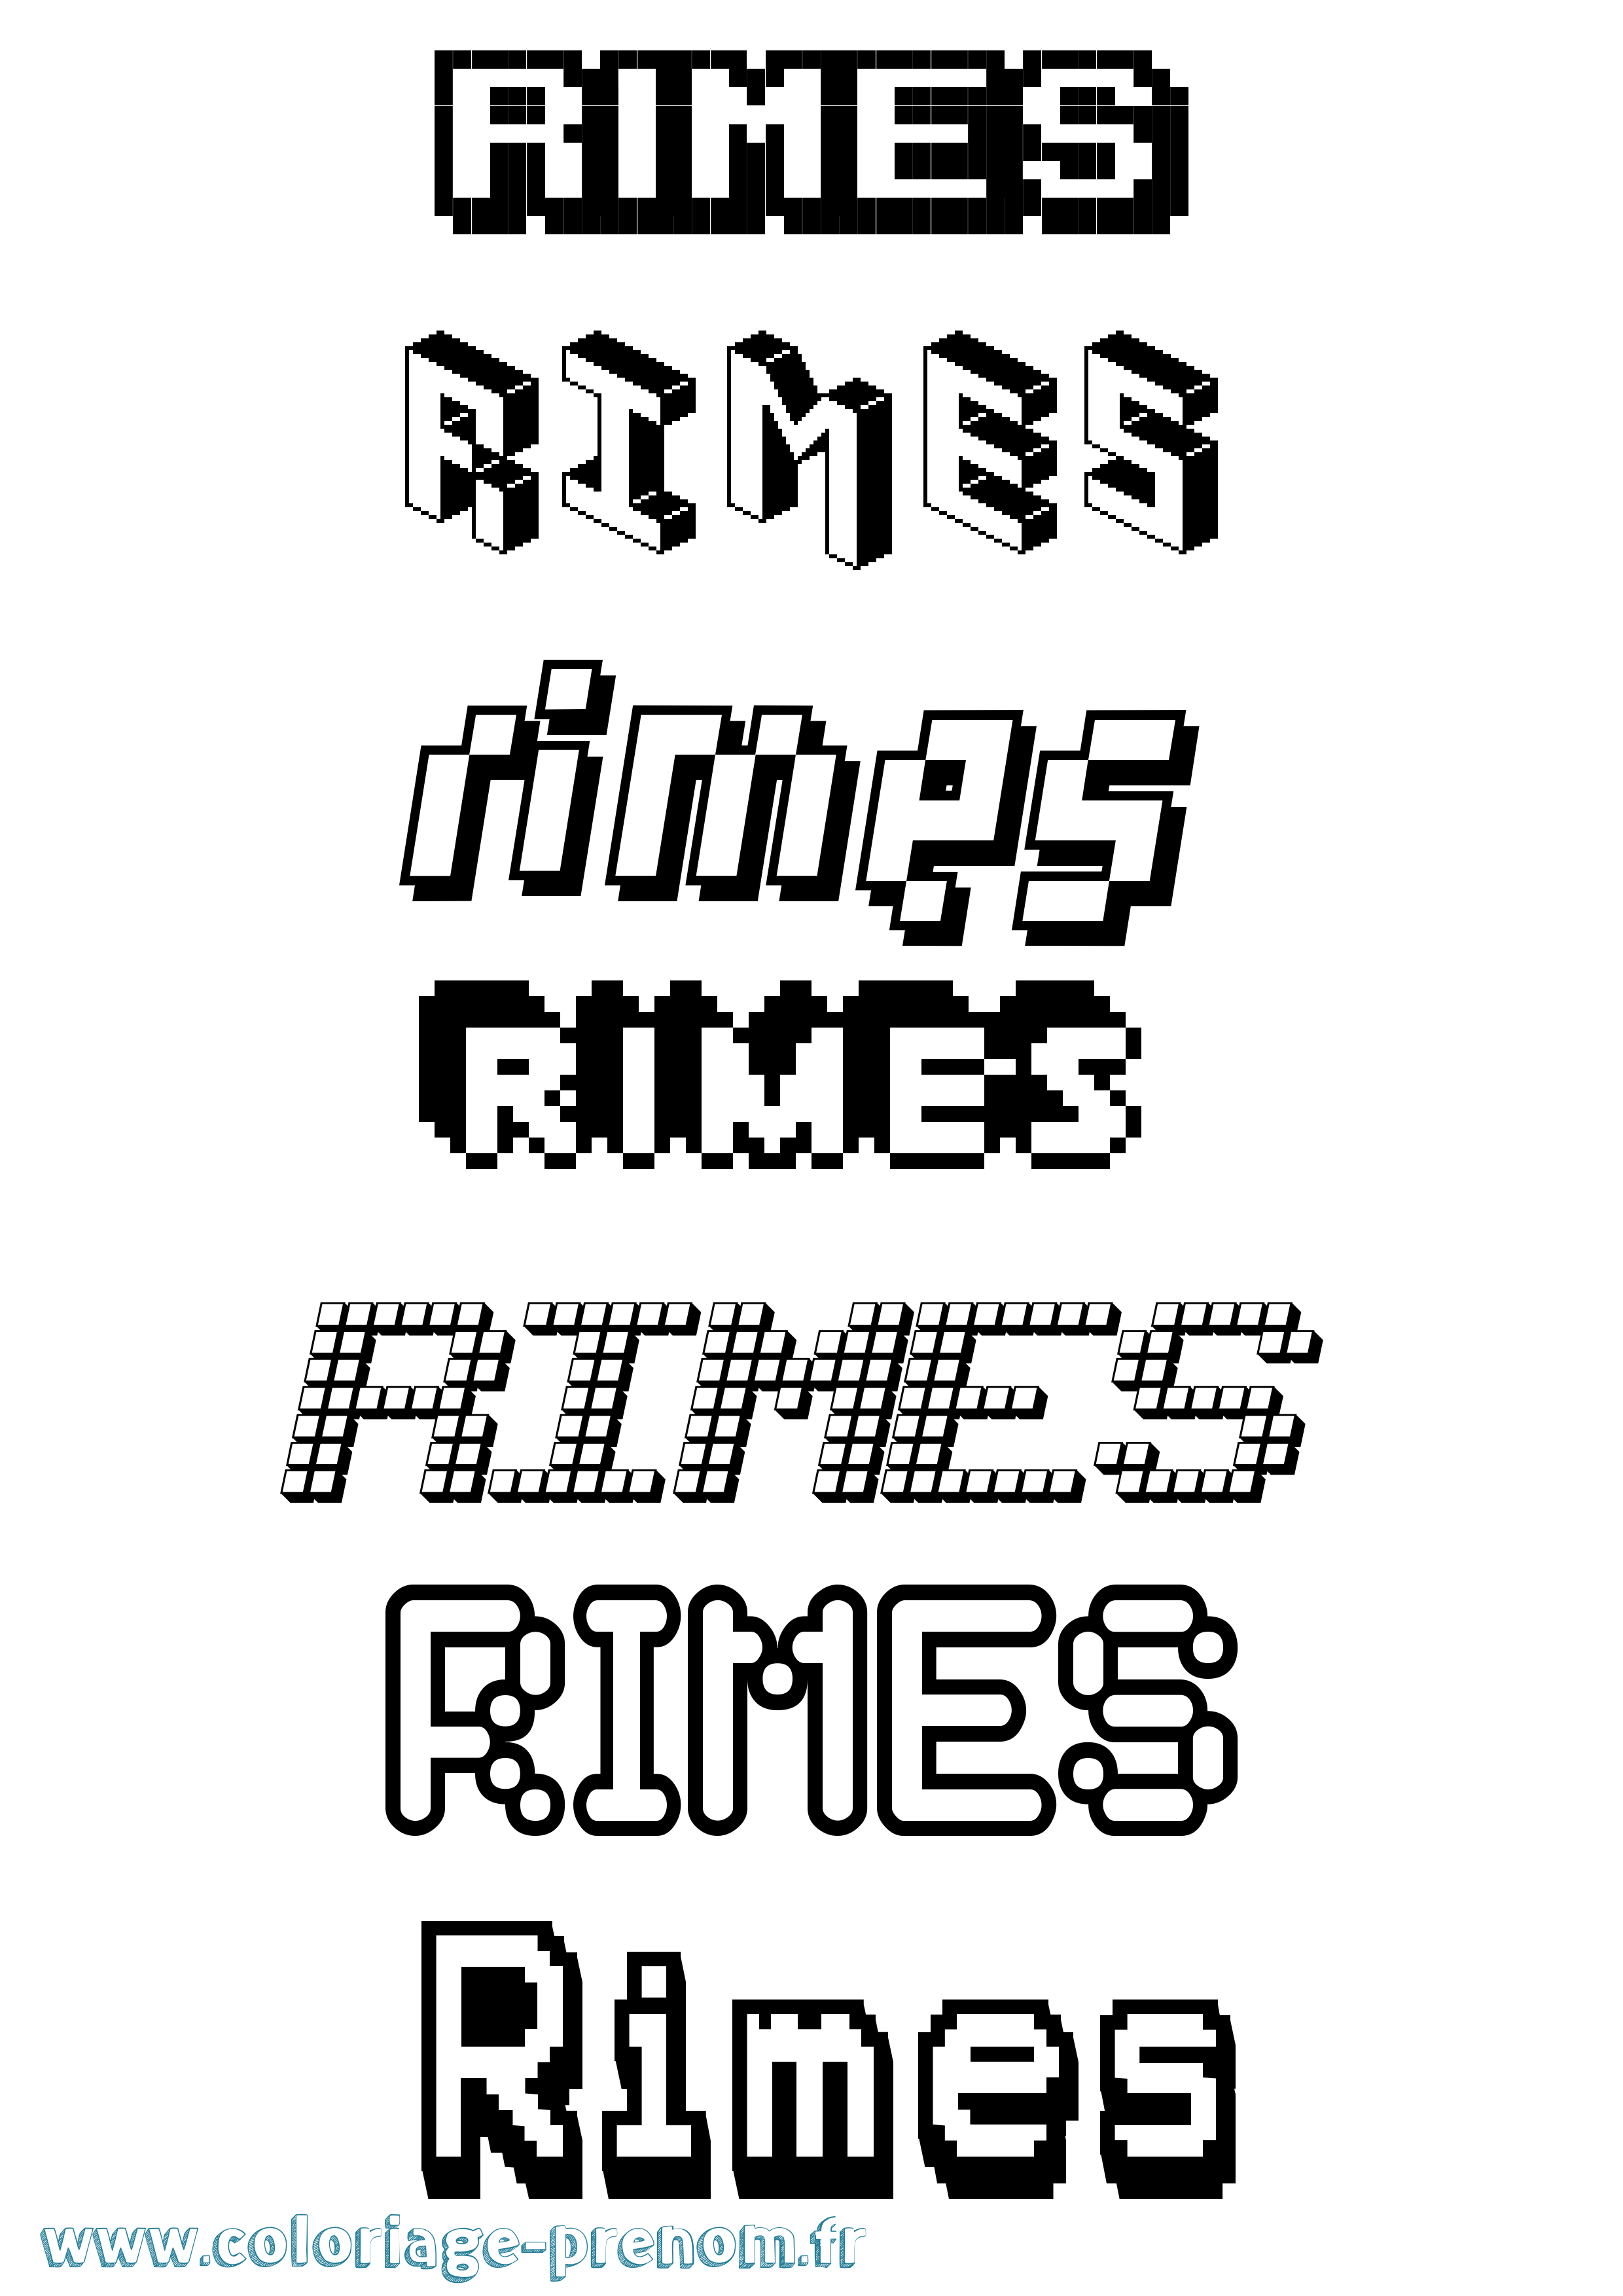 Coloriage prénom Rimes Pixel